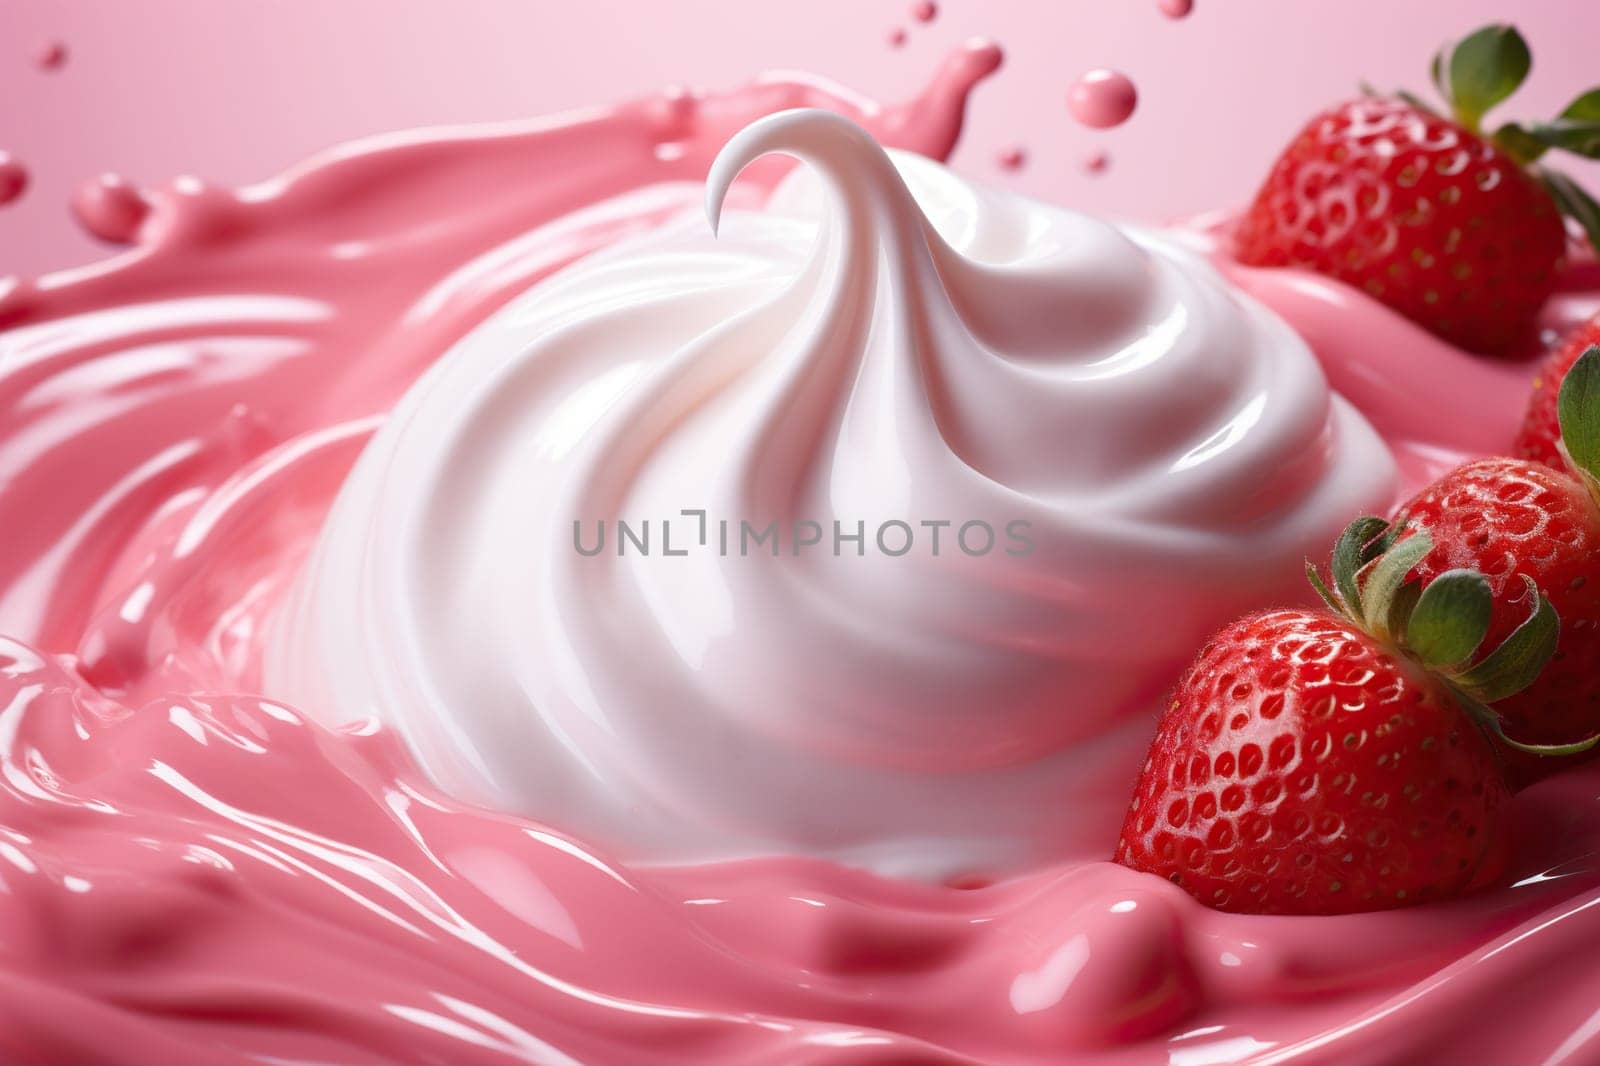 Ripe strawberries with cream, yogurt, top view.